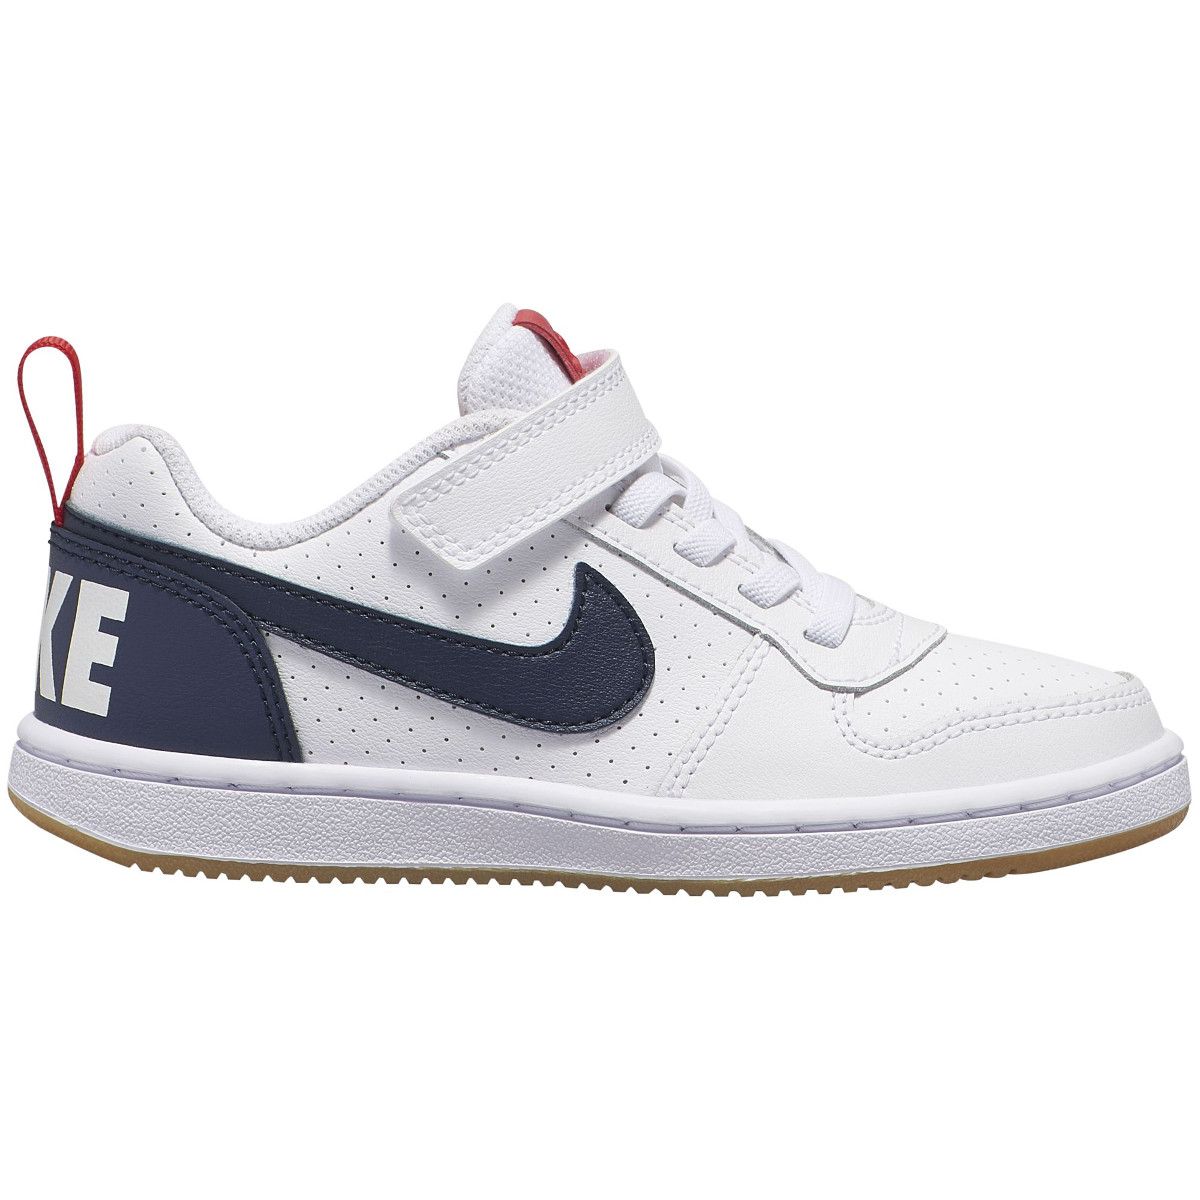 Nike Court Borough Low Boy's Shoes (PS) 870025-105